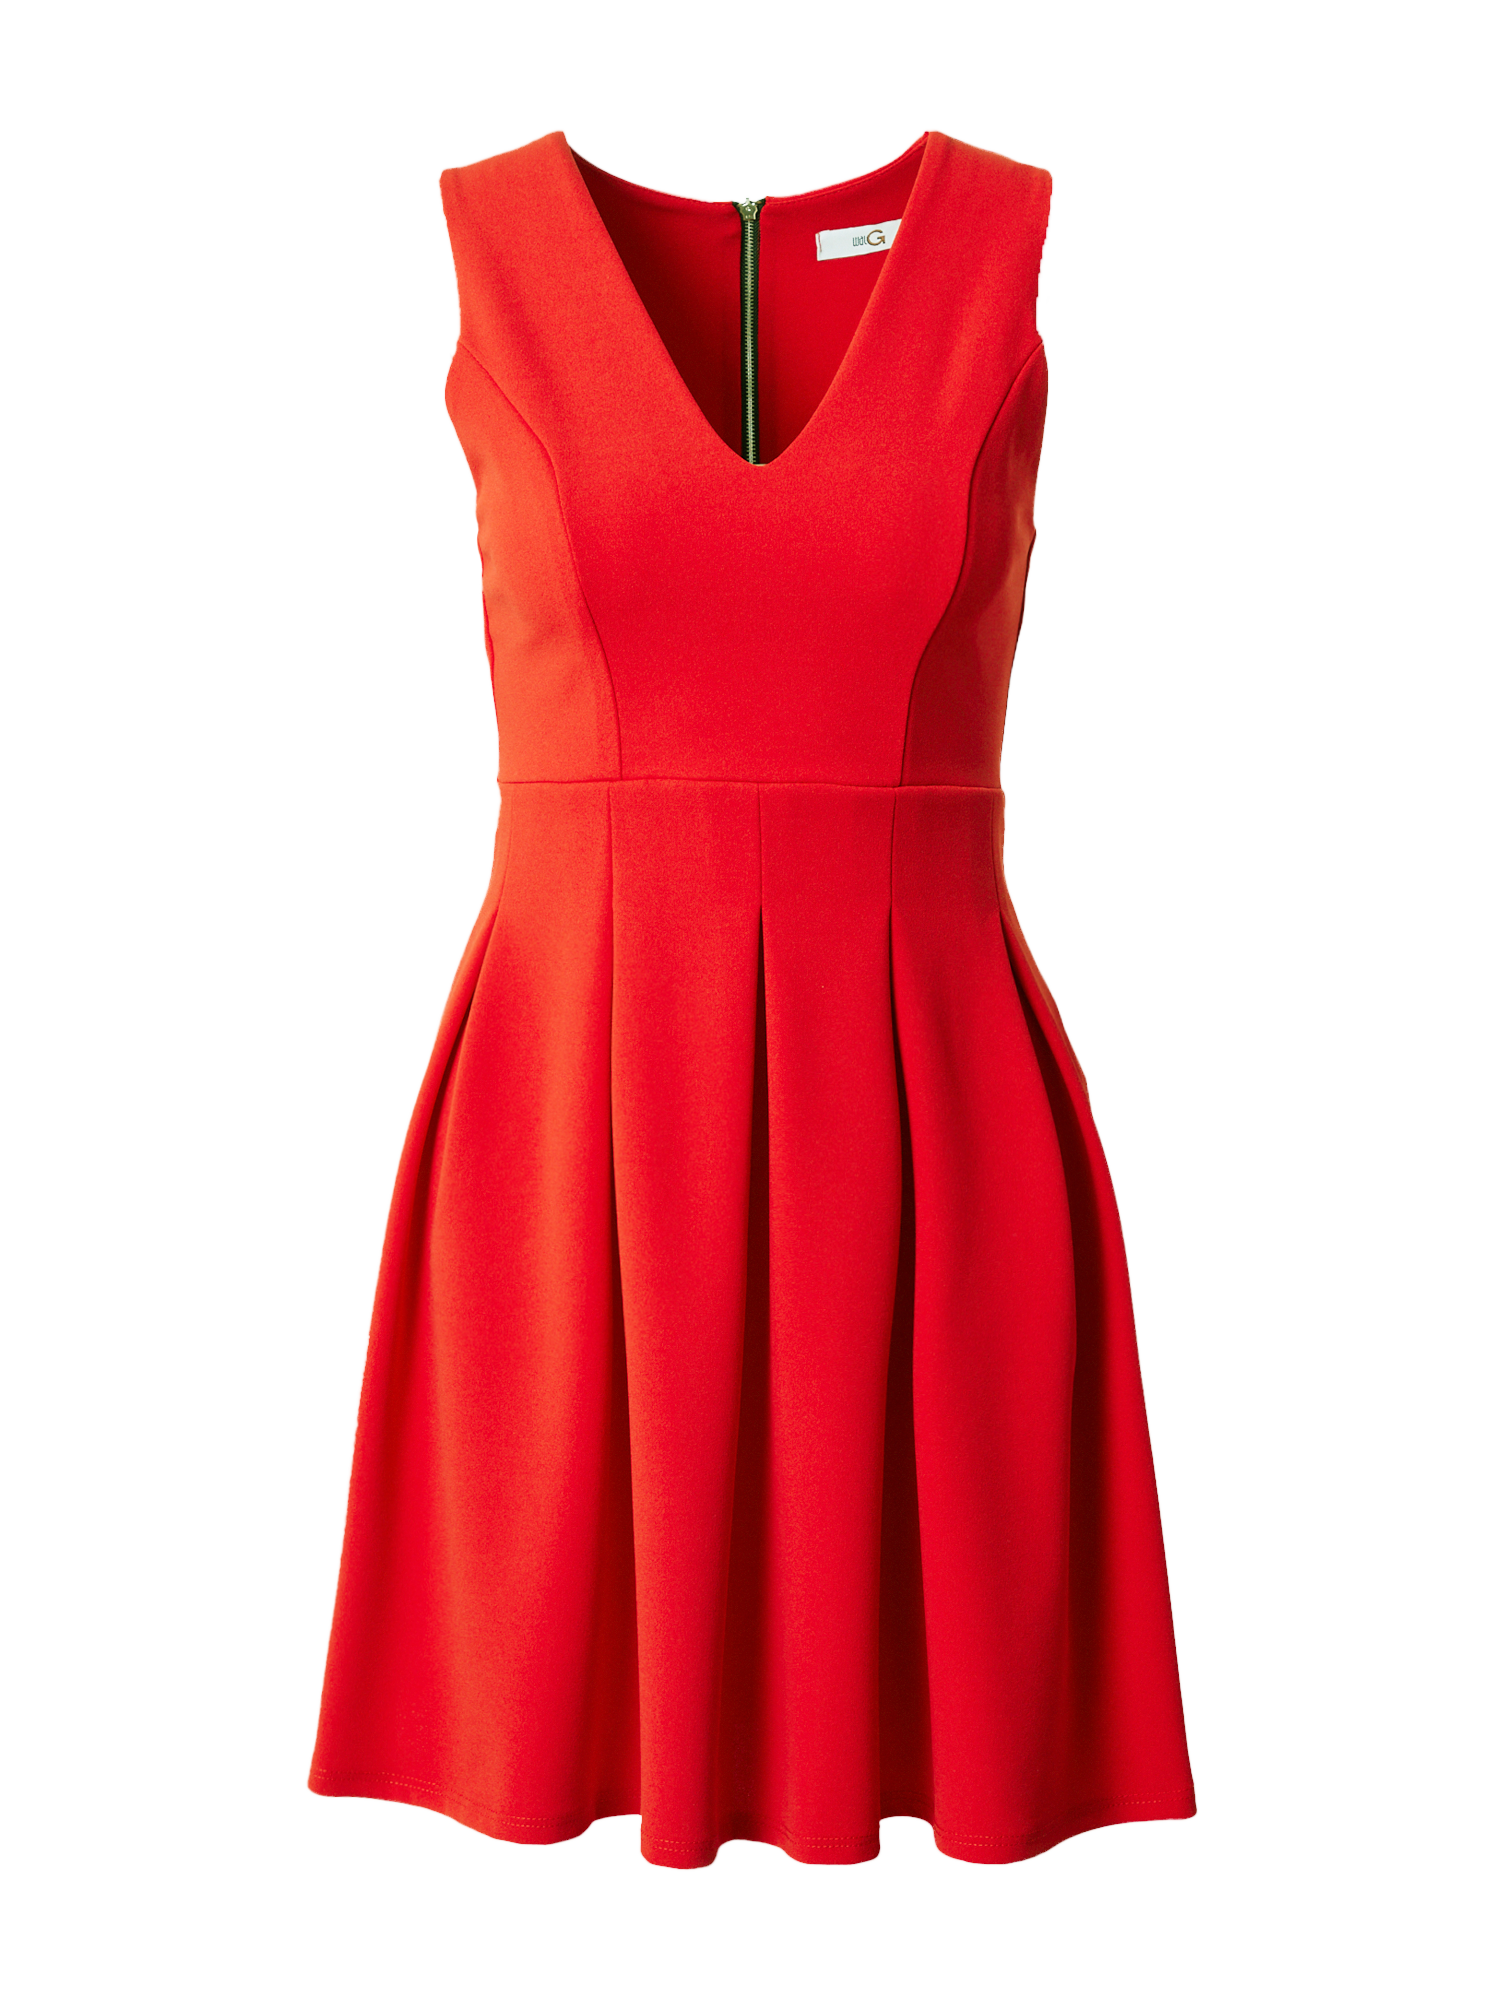 Odzież Kbalr WAL G. Sukienka koktajlowa JACKIE w kolorze Czerwonym 